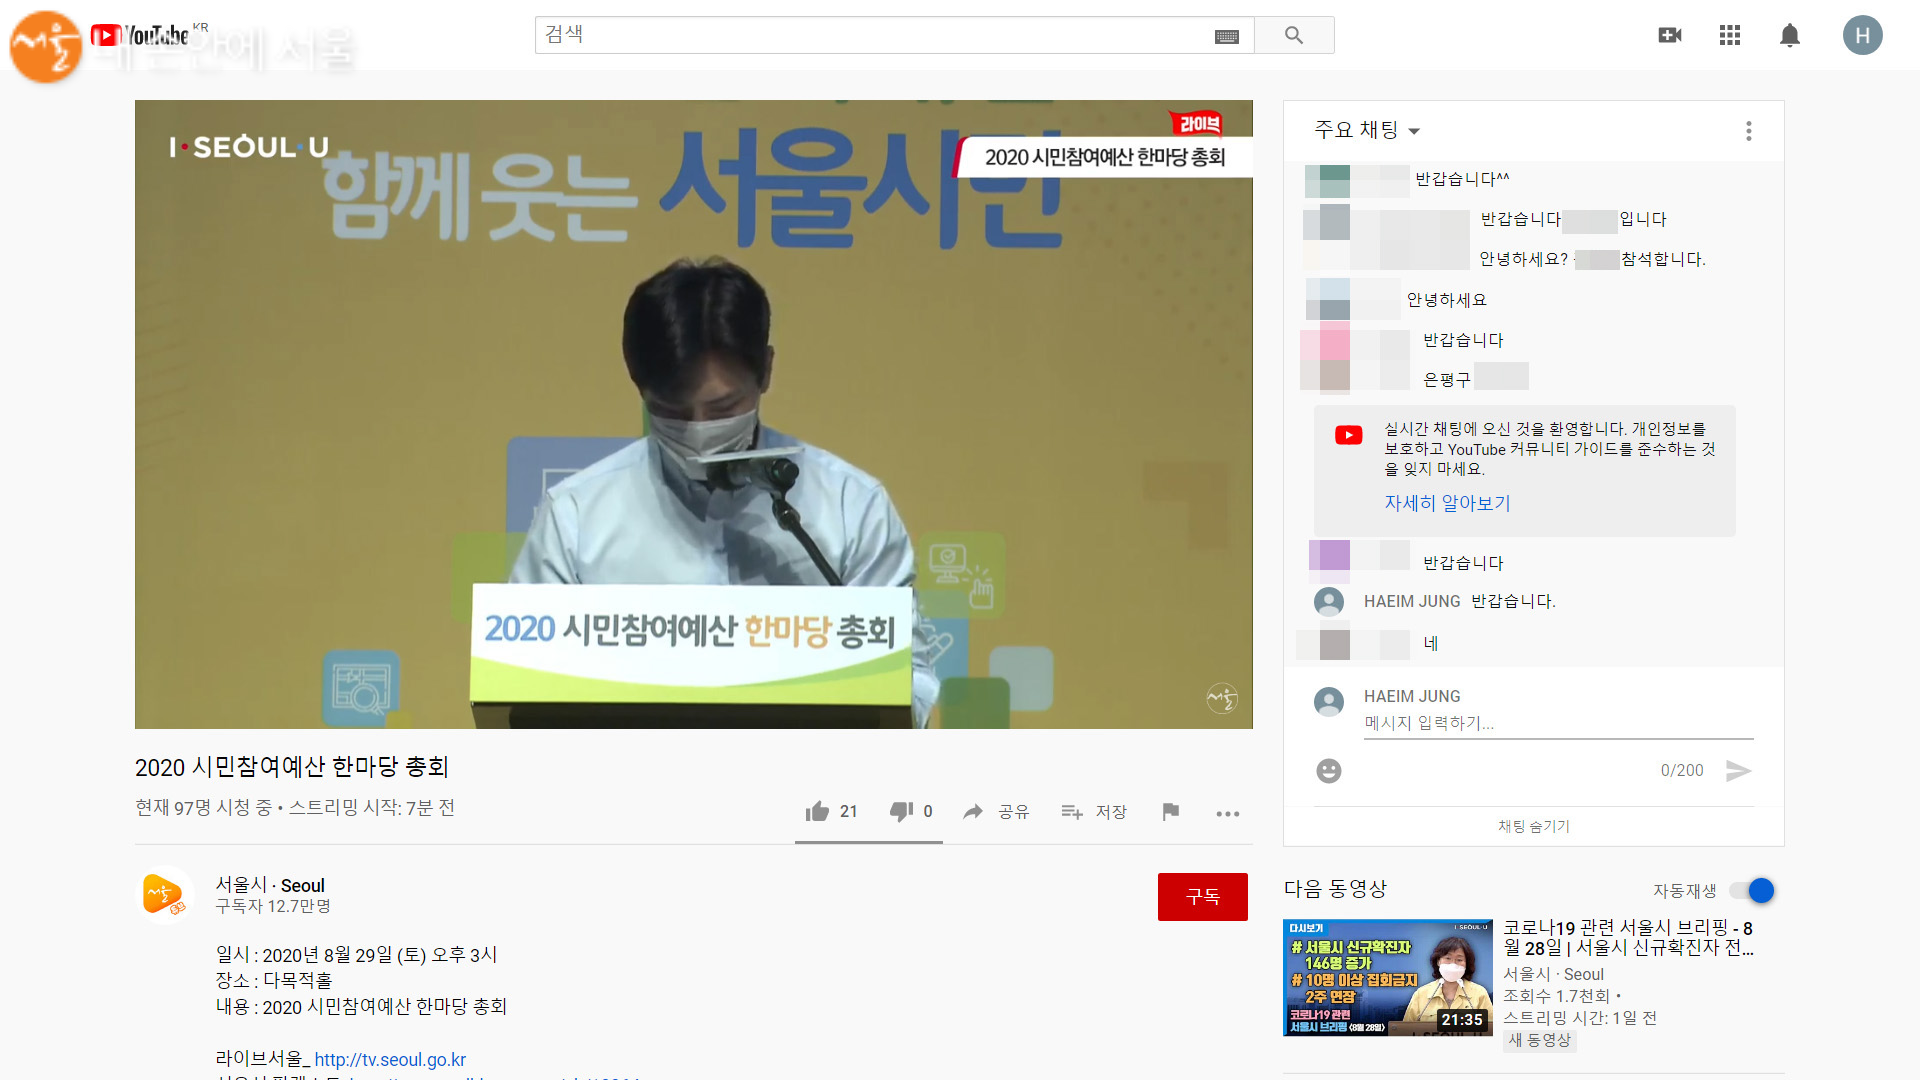 2020 시민참여예산 한마당 총회는 온라인으로 시청하며 채팅에도 참여할 수 있다 ⓒ서울시 유튜브